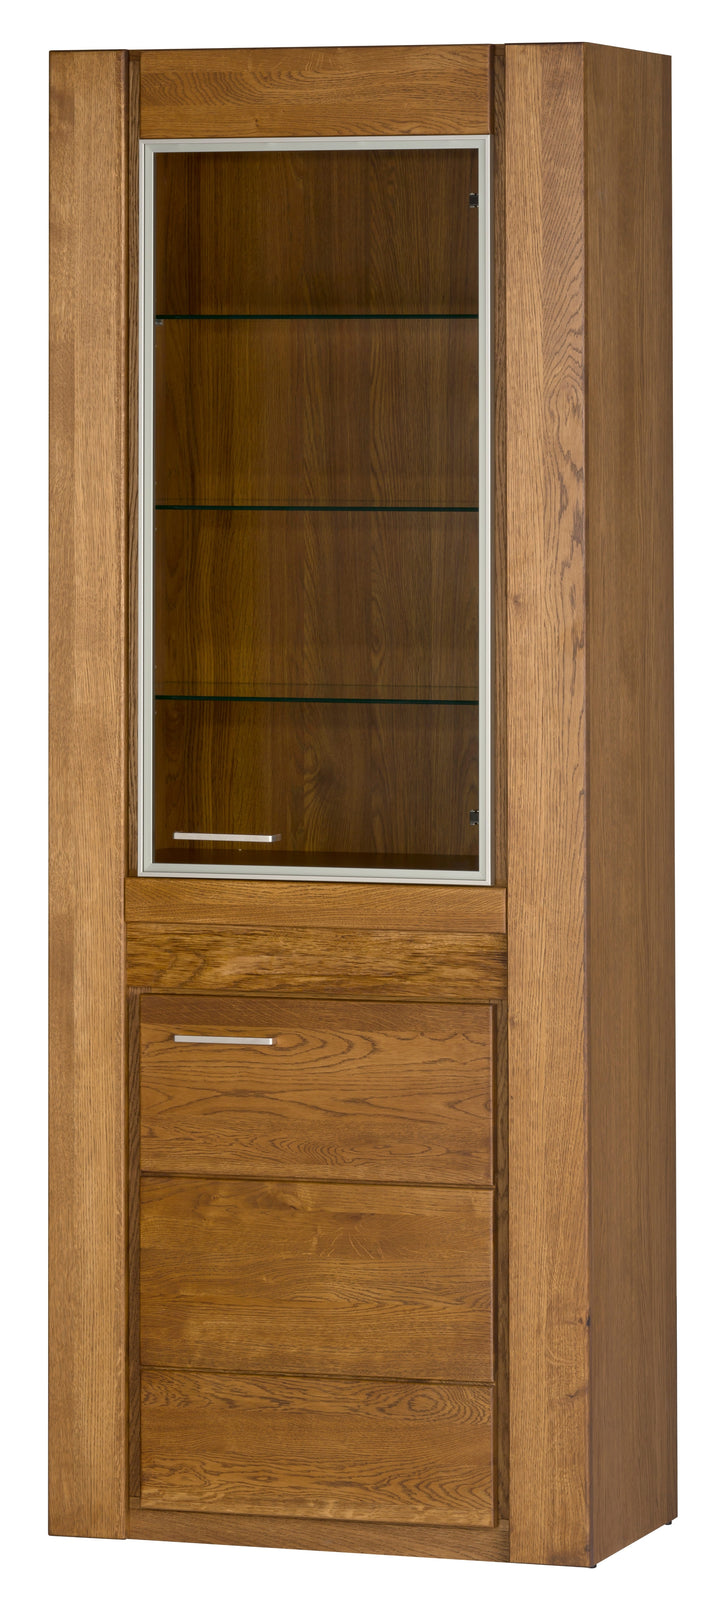 VESKOR Mueble vitrina de madera maciza de roble de la colección Velvet. Mueble nórdico con un diseño moderno 